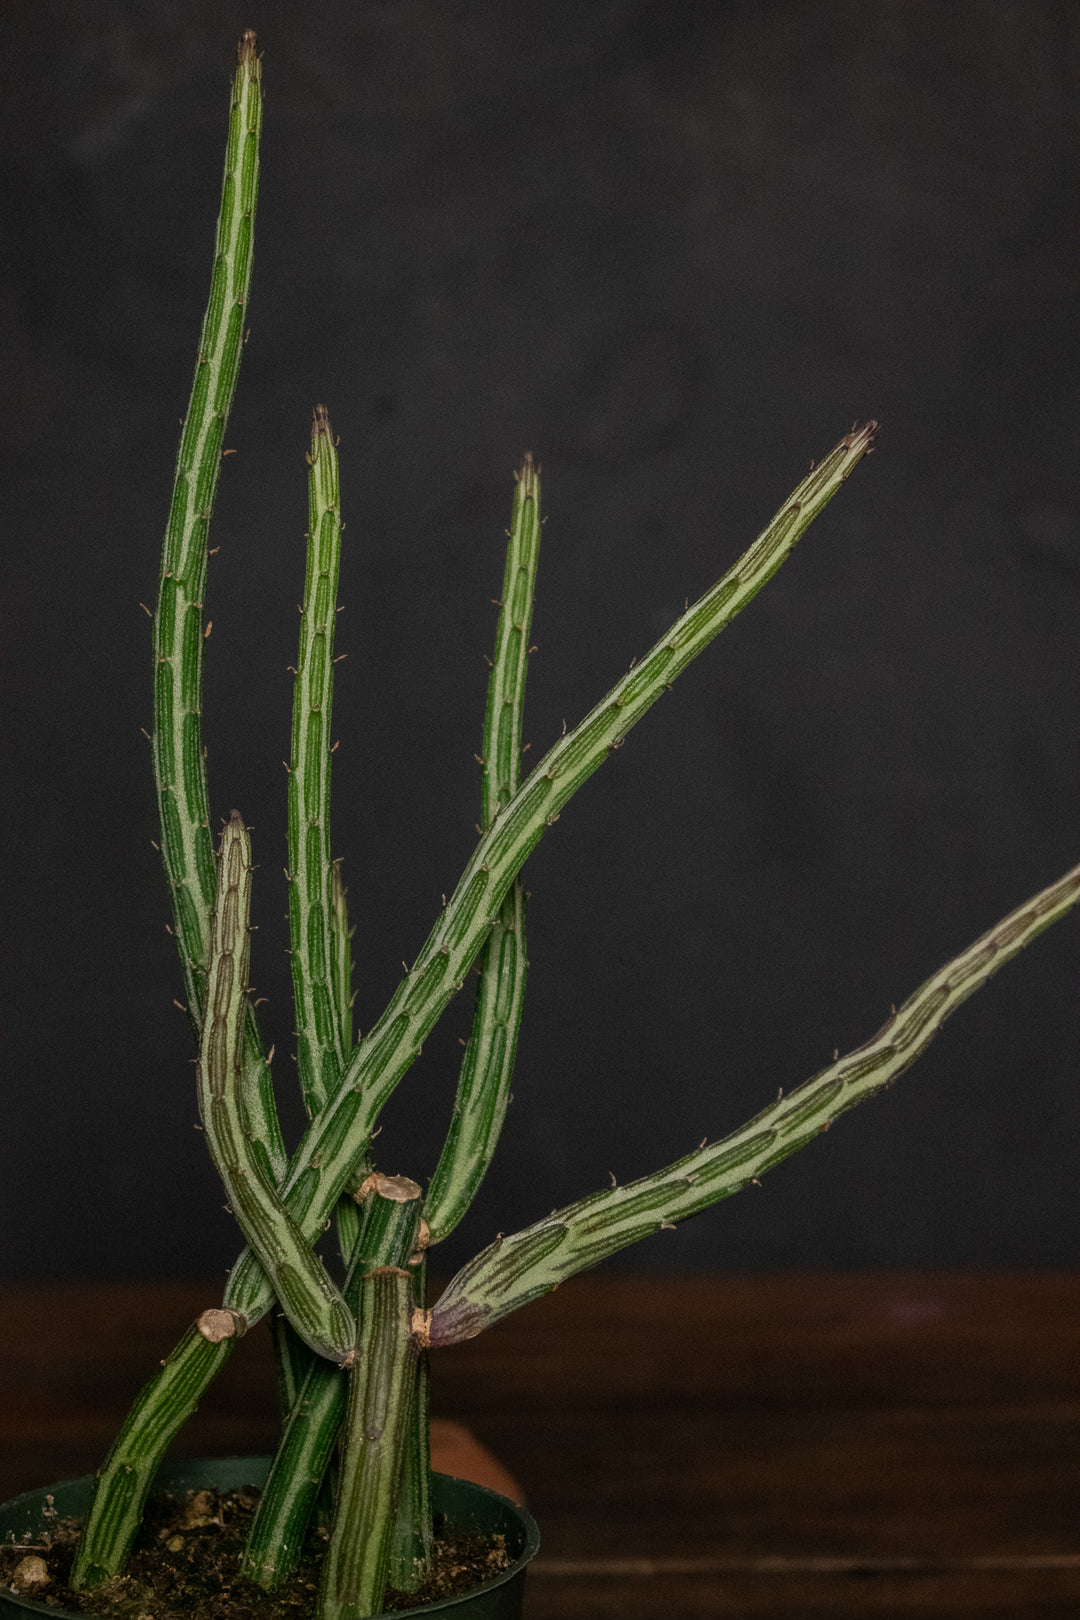 Senecio - Stapeliformis "Pickle Plant"